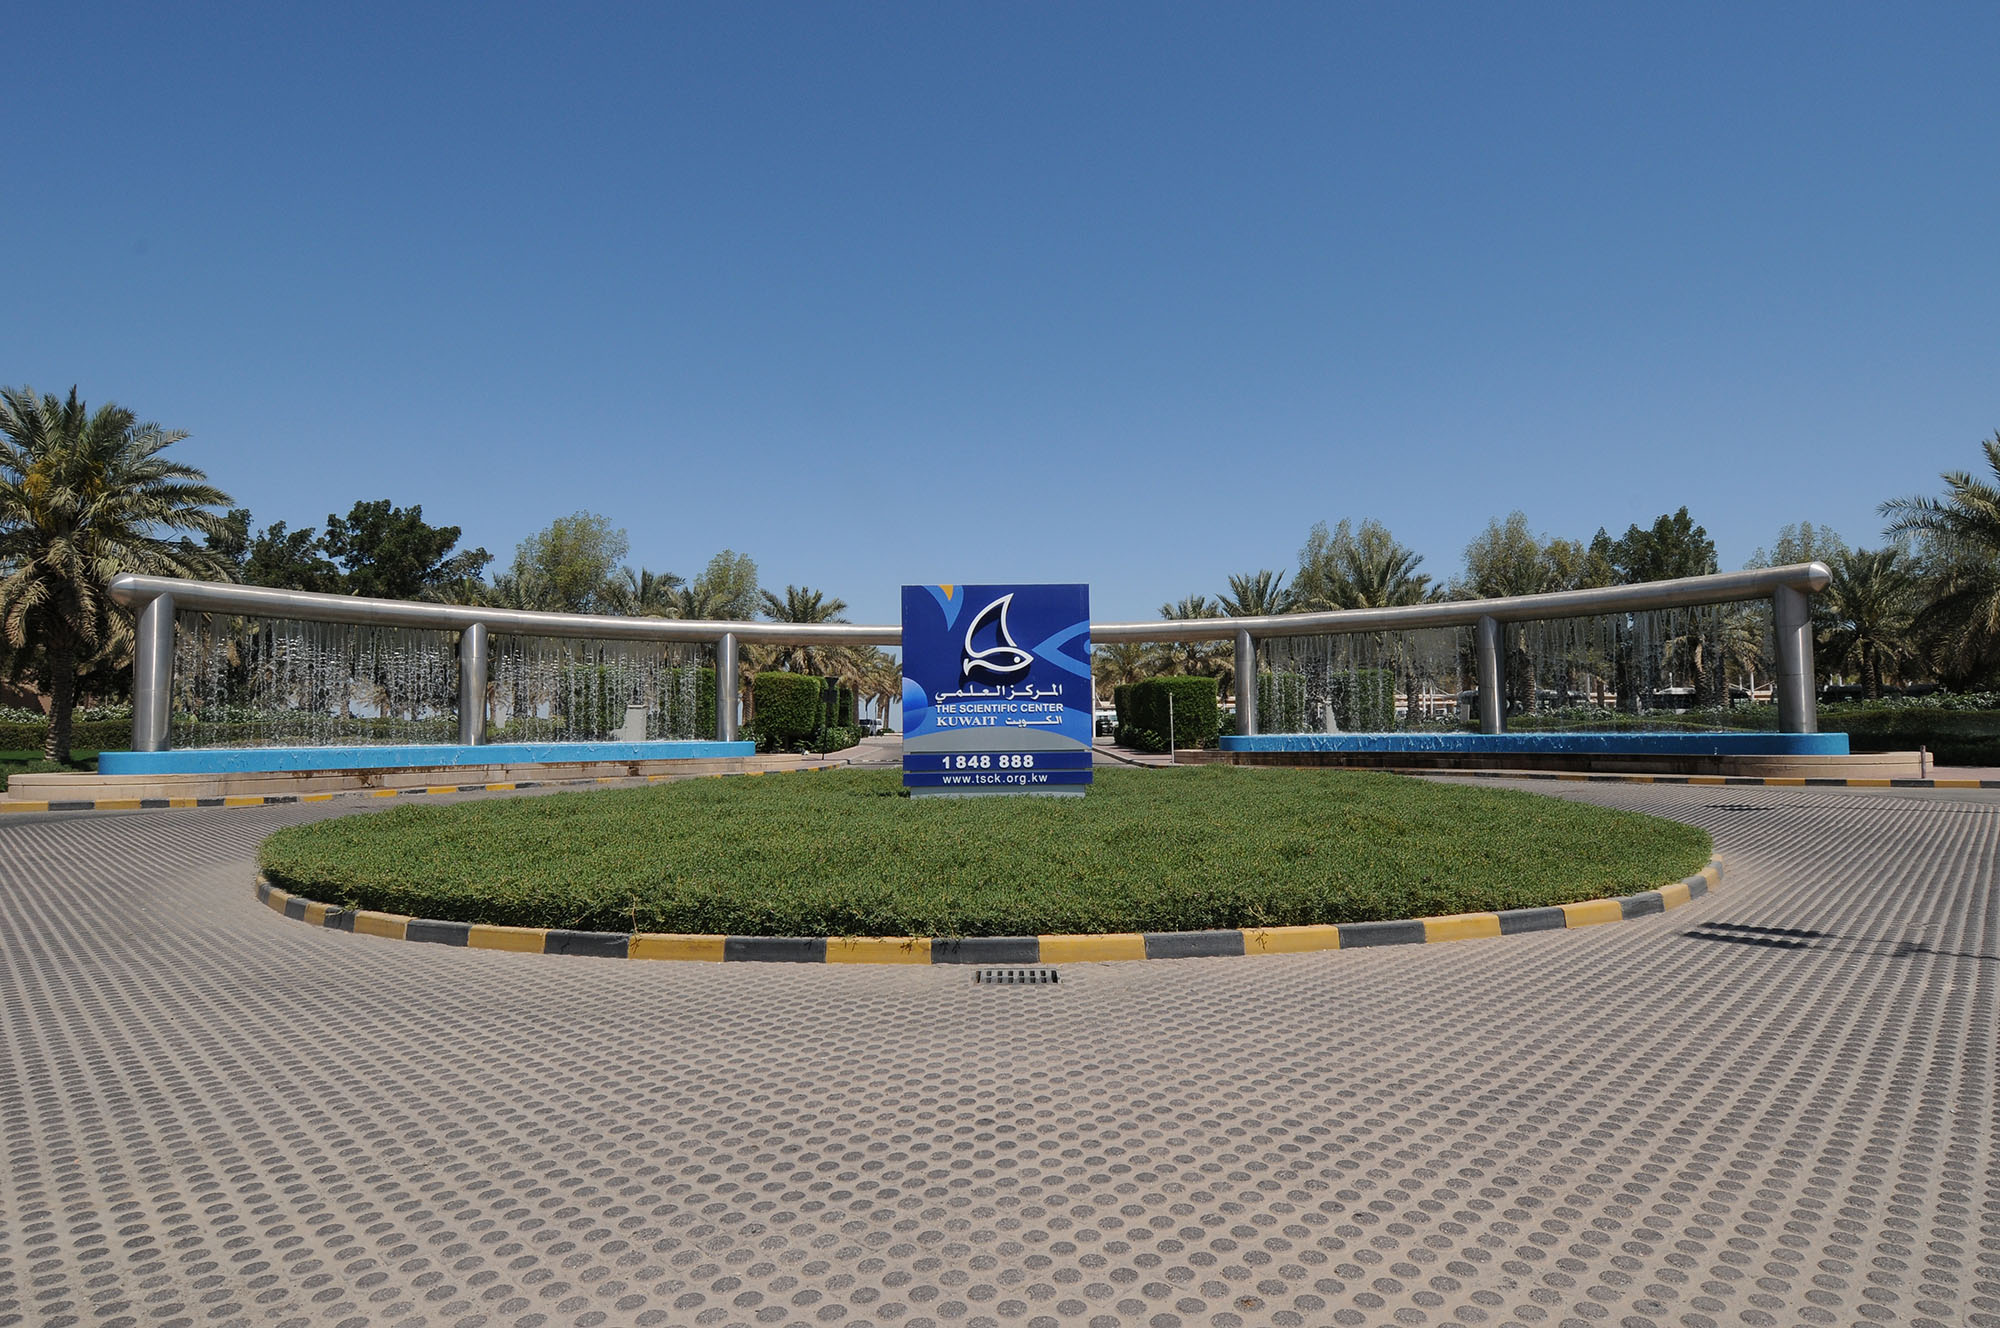 The Scientific Center Promenade